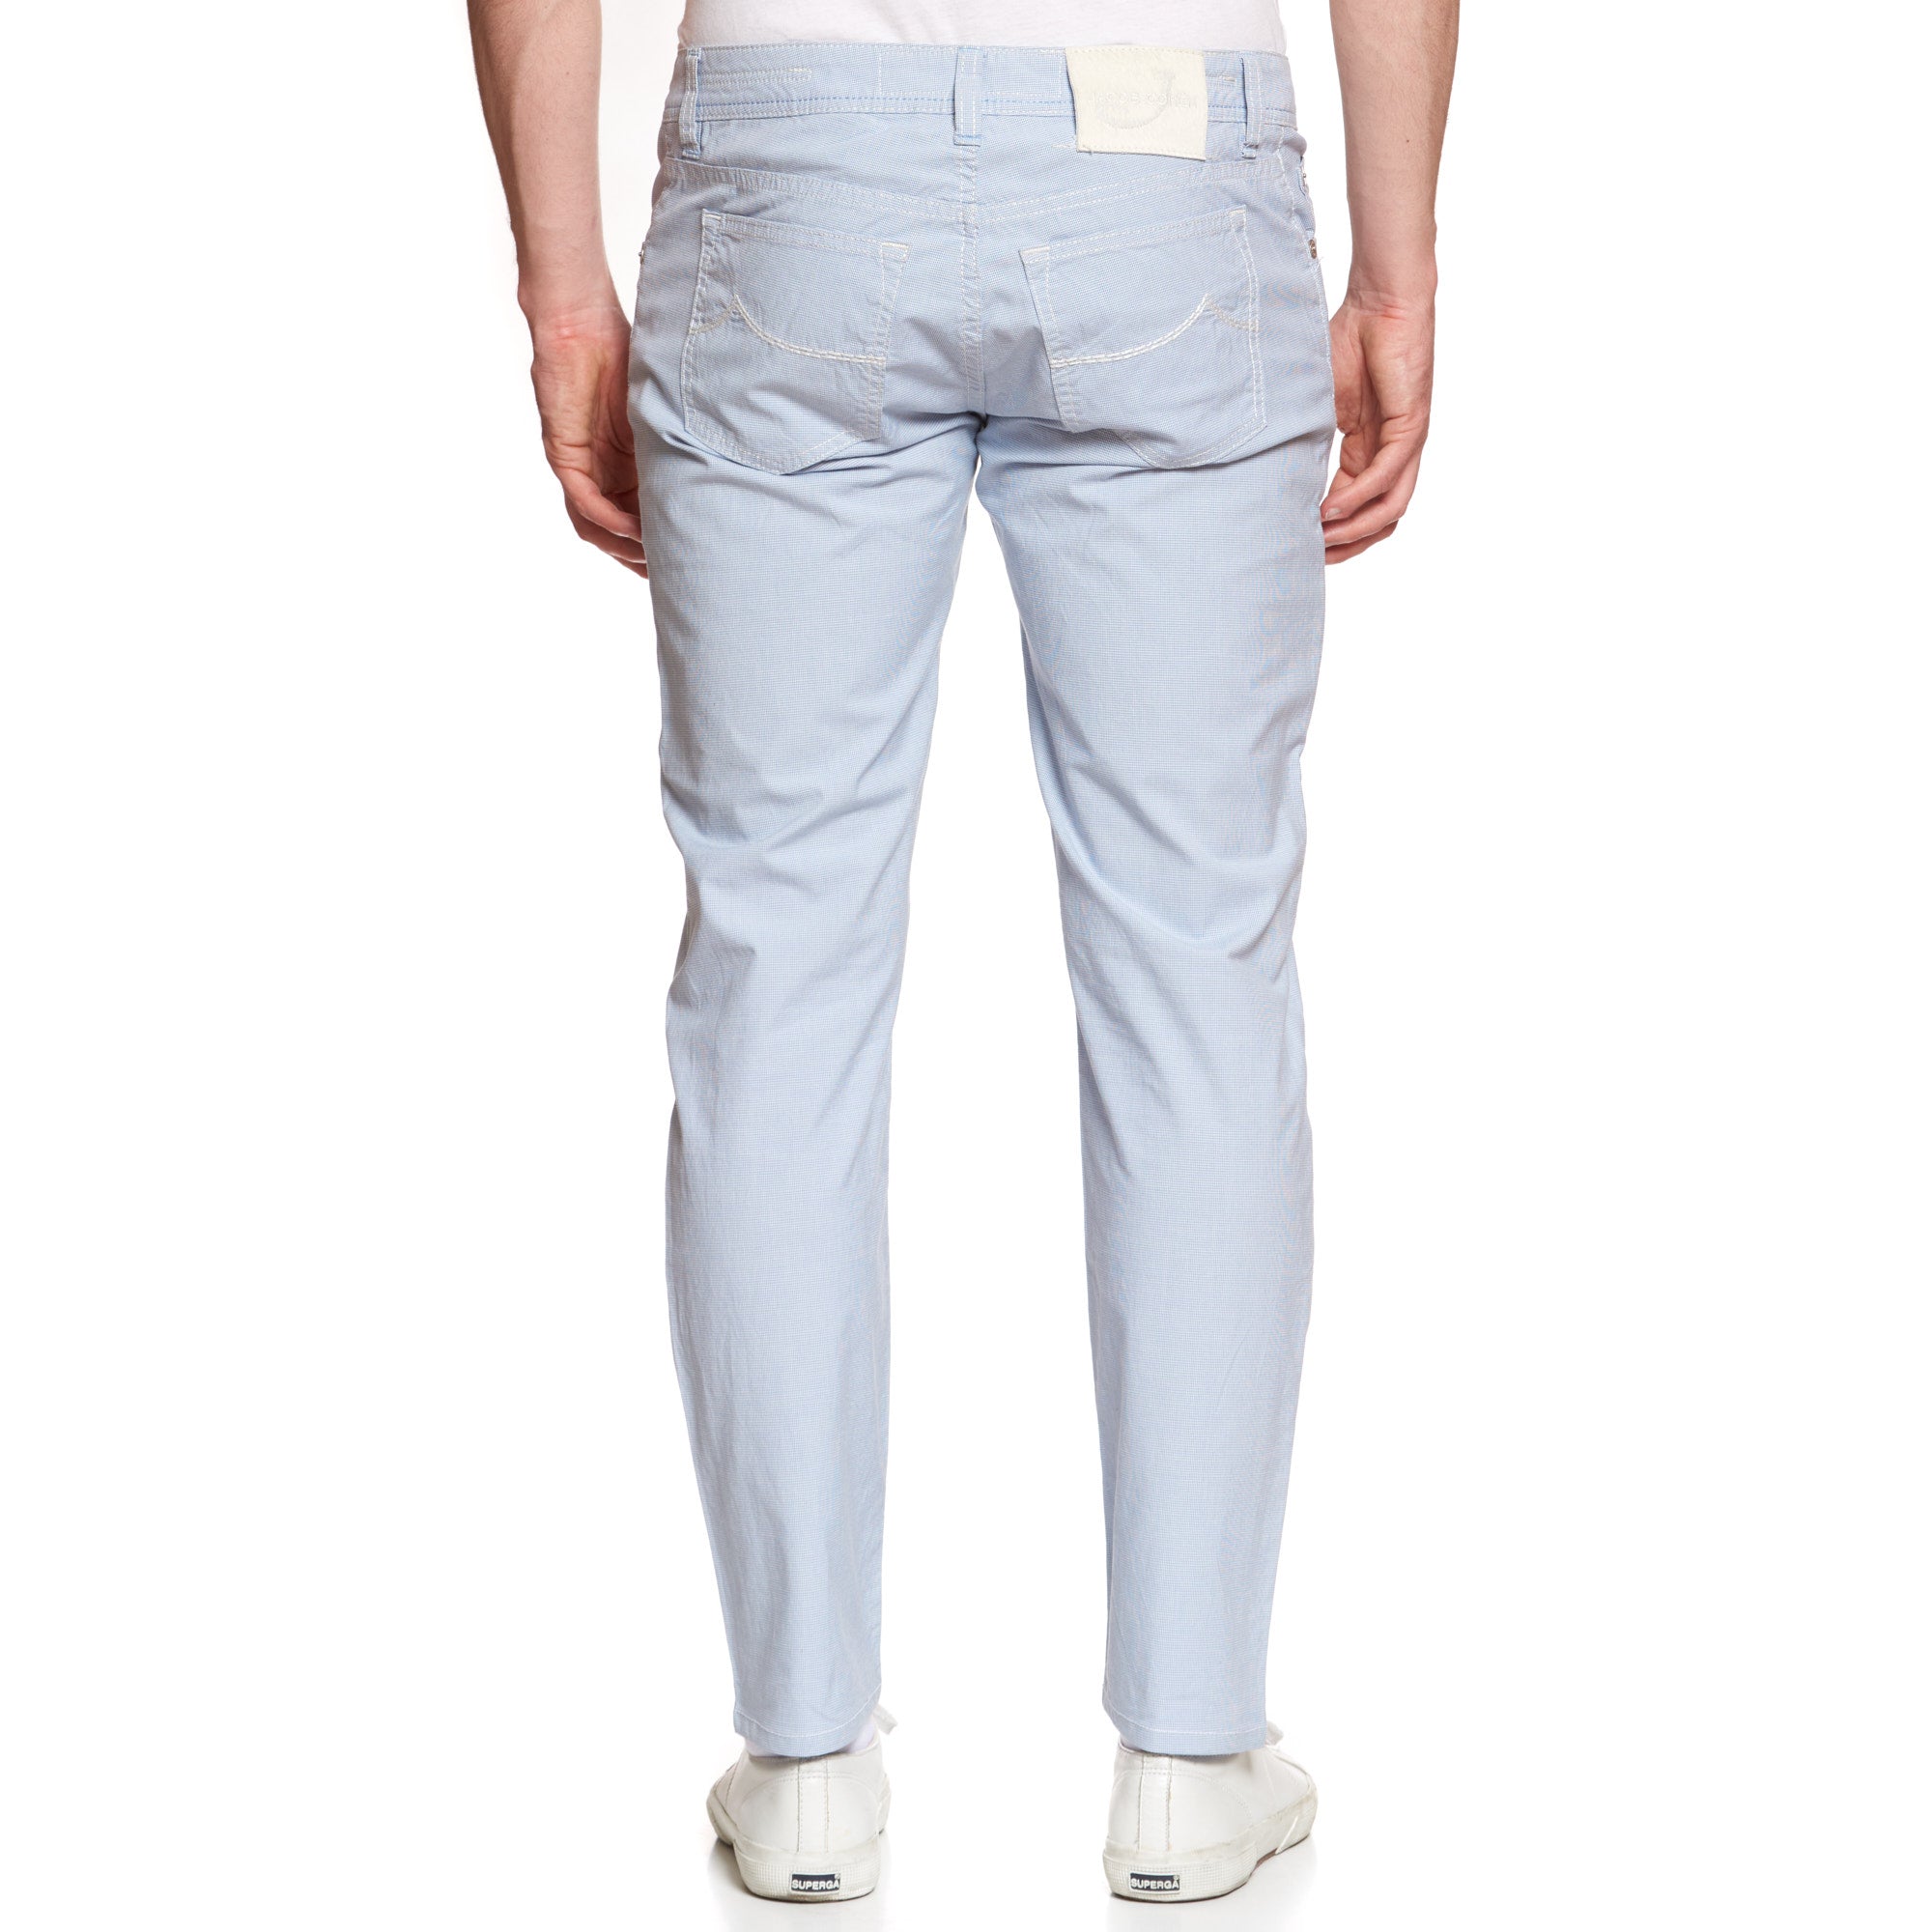 JACOB COHEN J688 Comfort Blue Cotton Stretch Slim Jeans Pants US 34